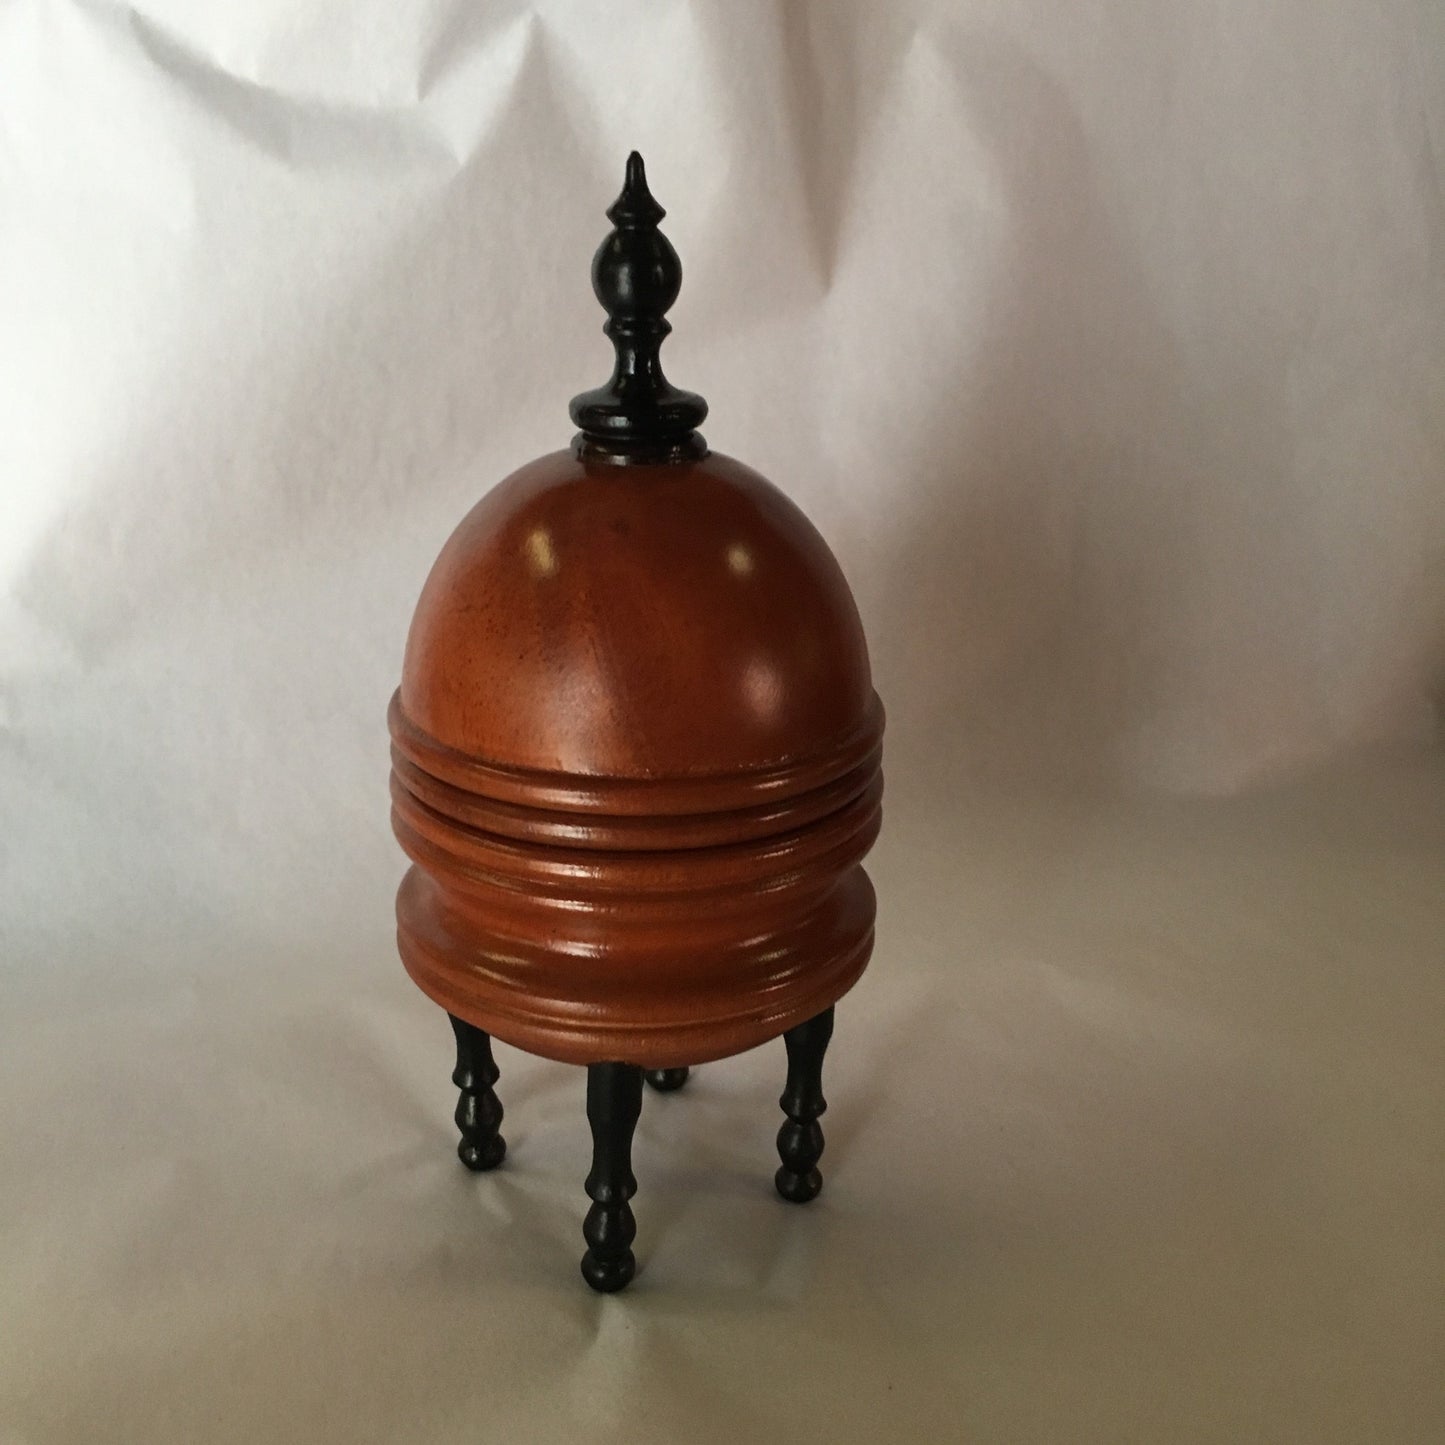 Orange Vase Tarbell-CW, Asian mahogany or Ebony